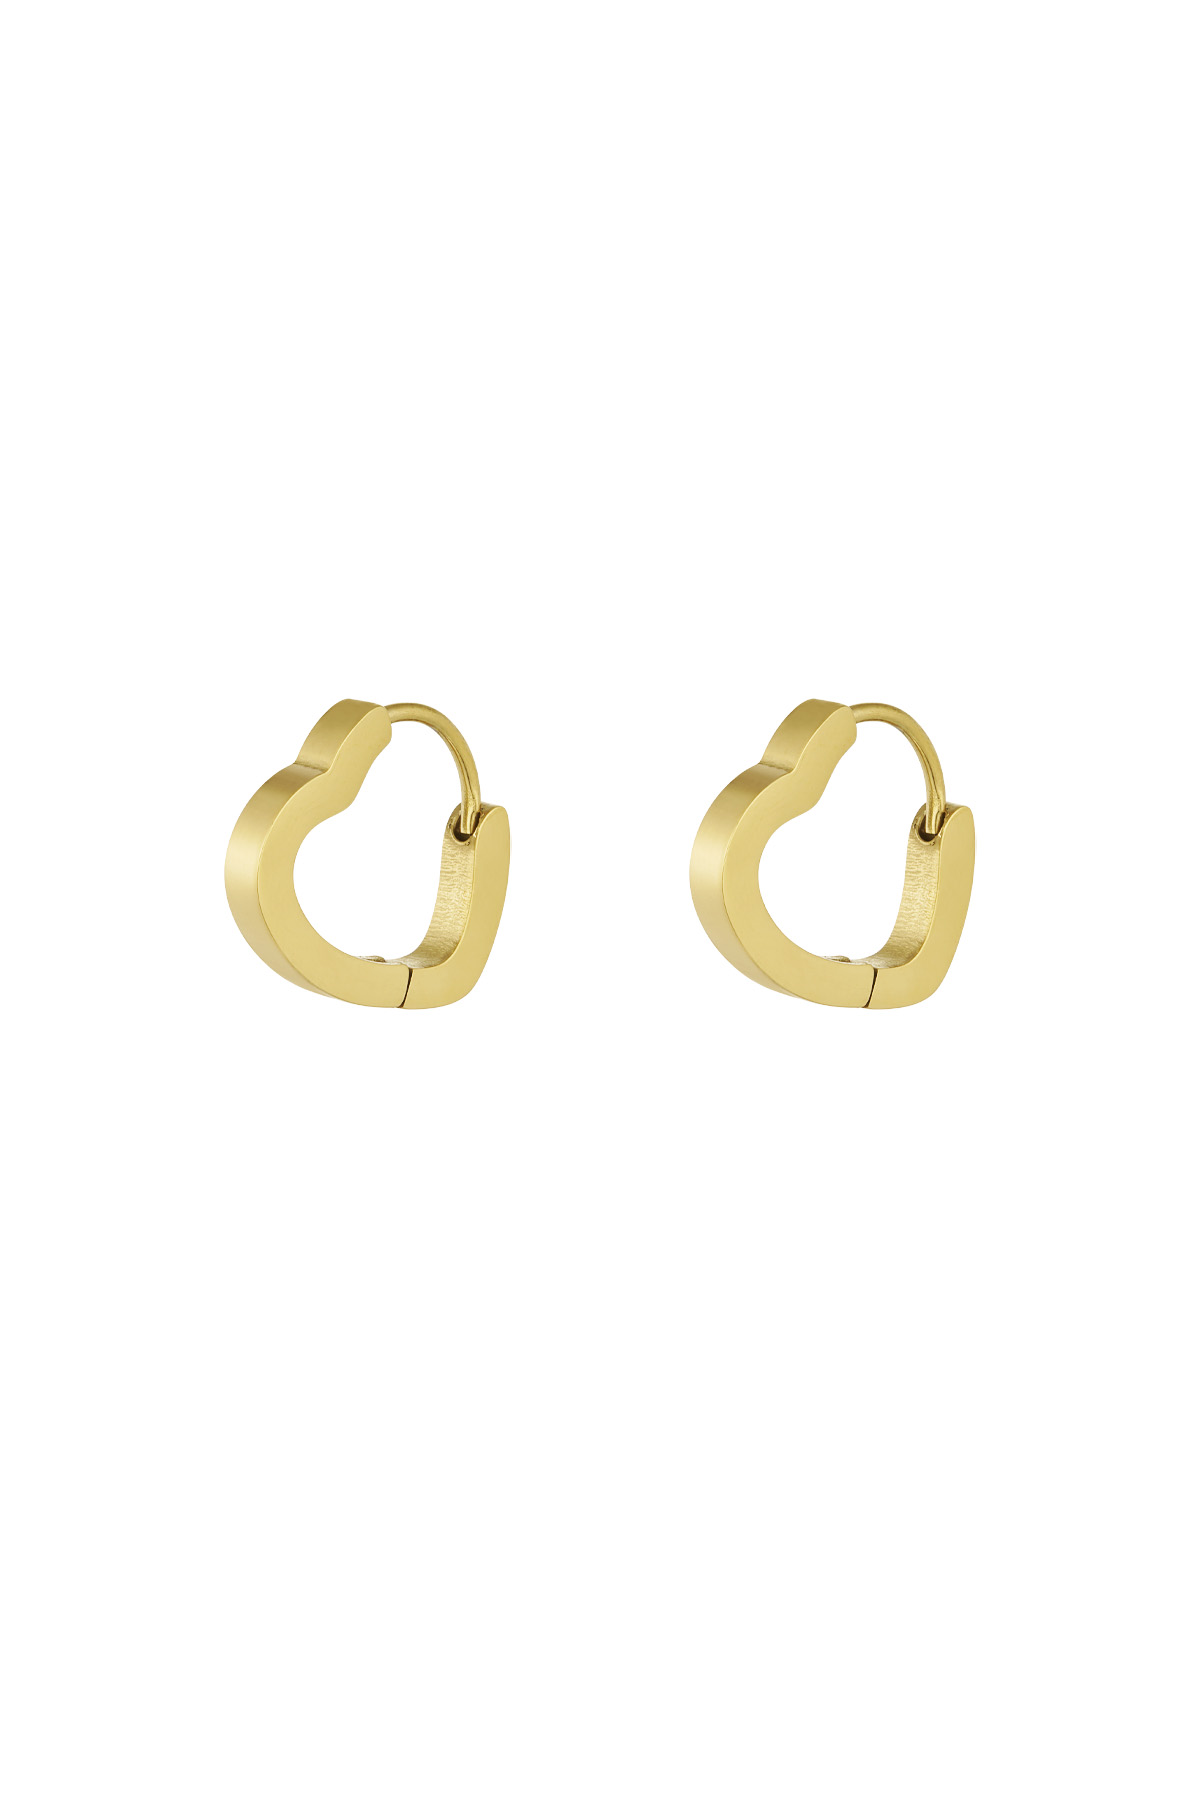 Basic earrings heart small - gold